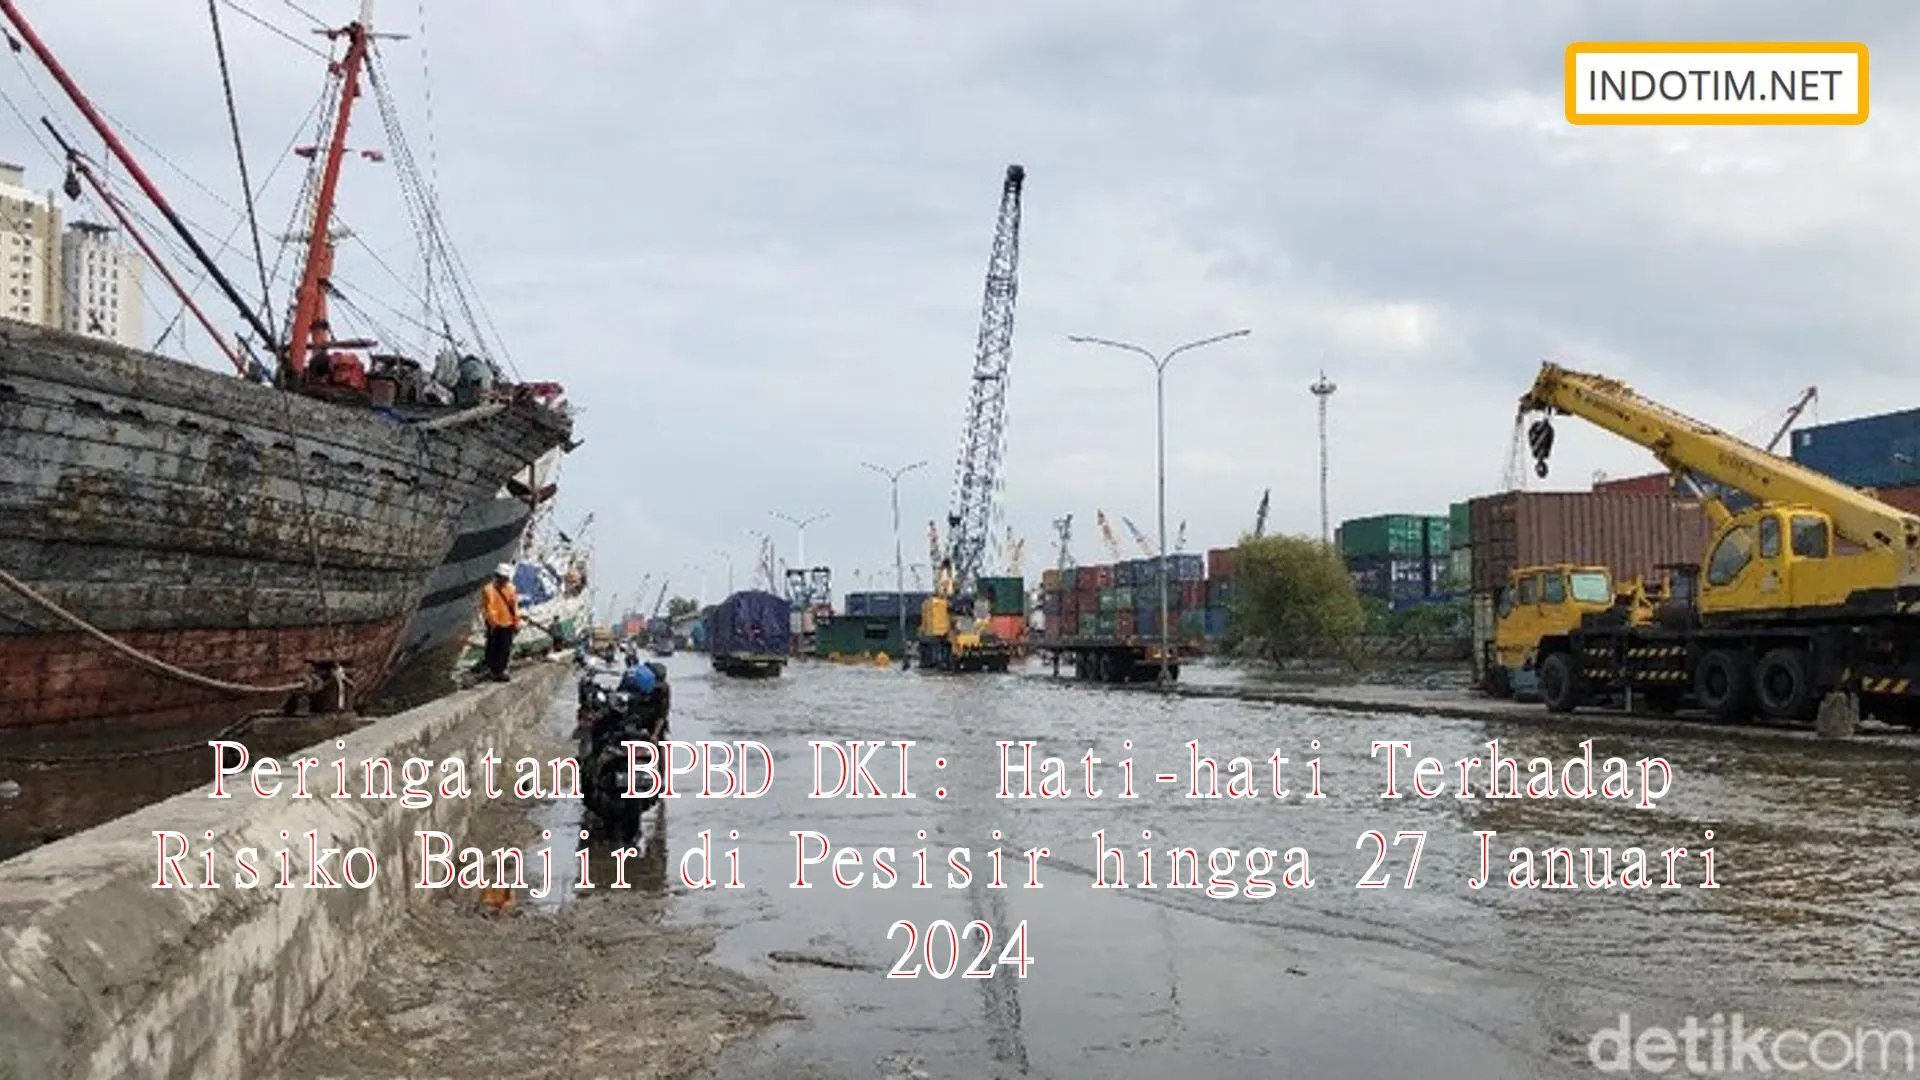 Peringatan BPBD DKI: Hati-hati Terhadap Risiko Banjir di Pesisir hingga 27 Januari 2024